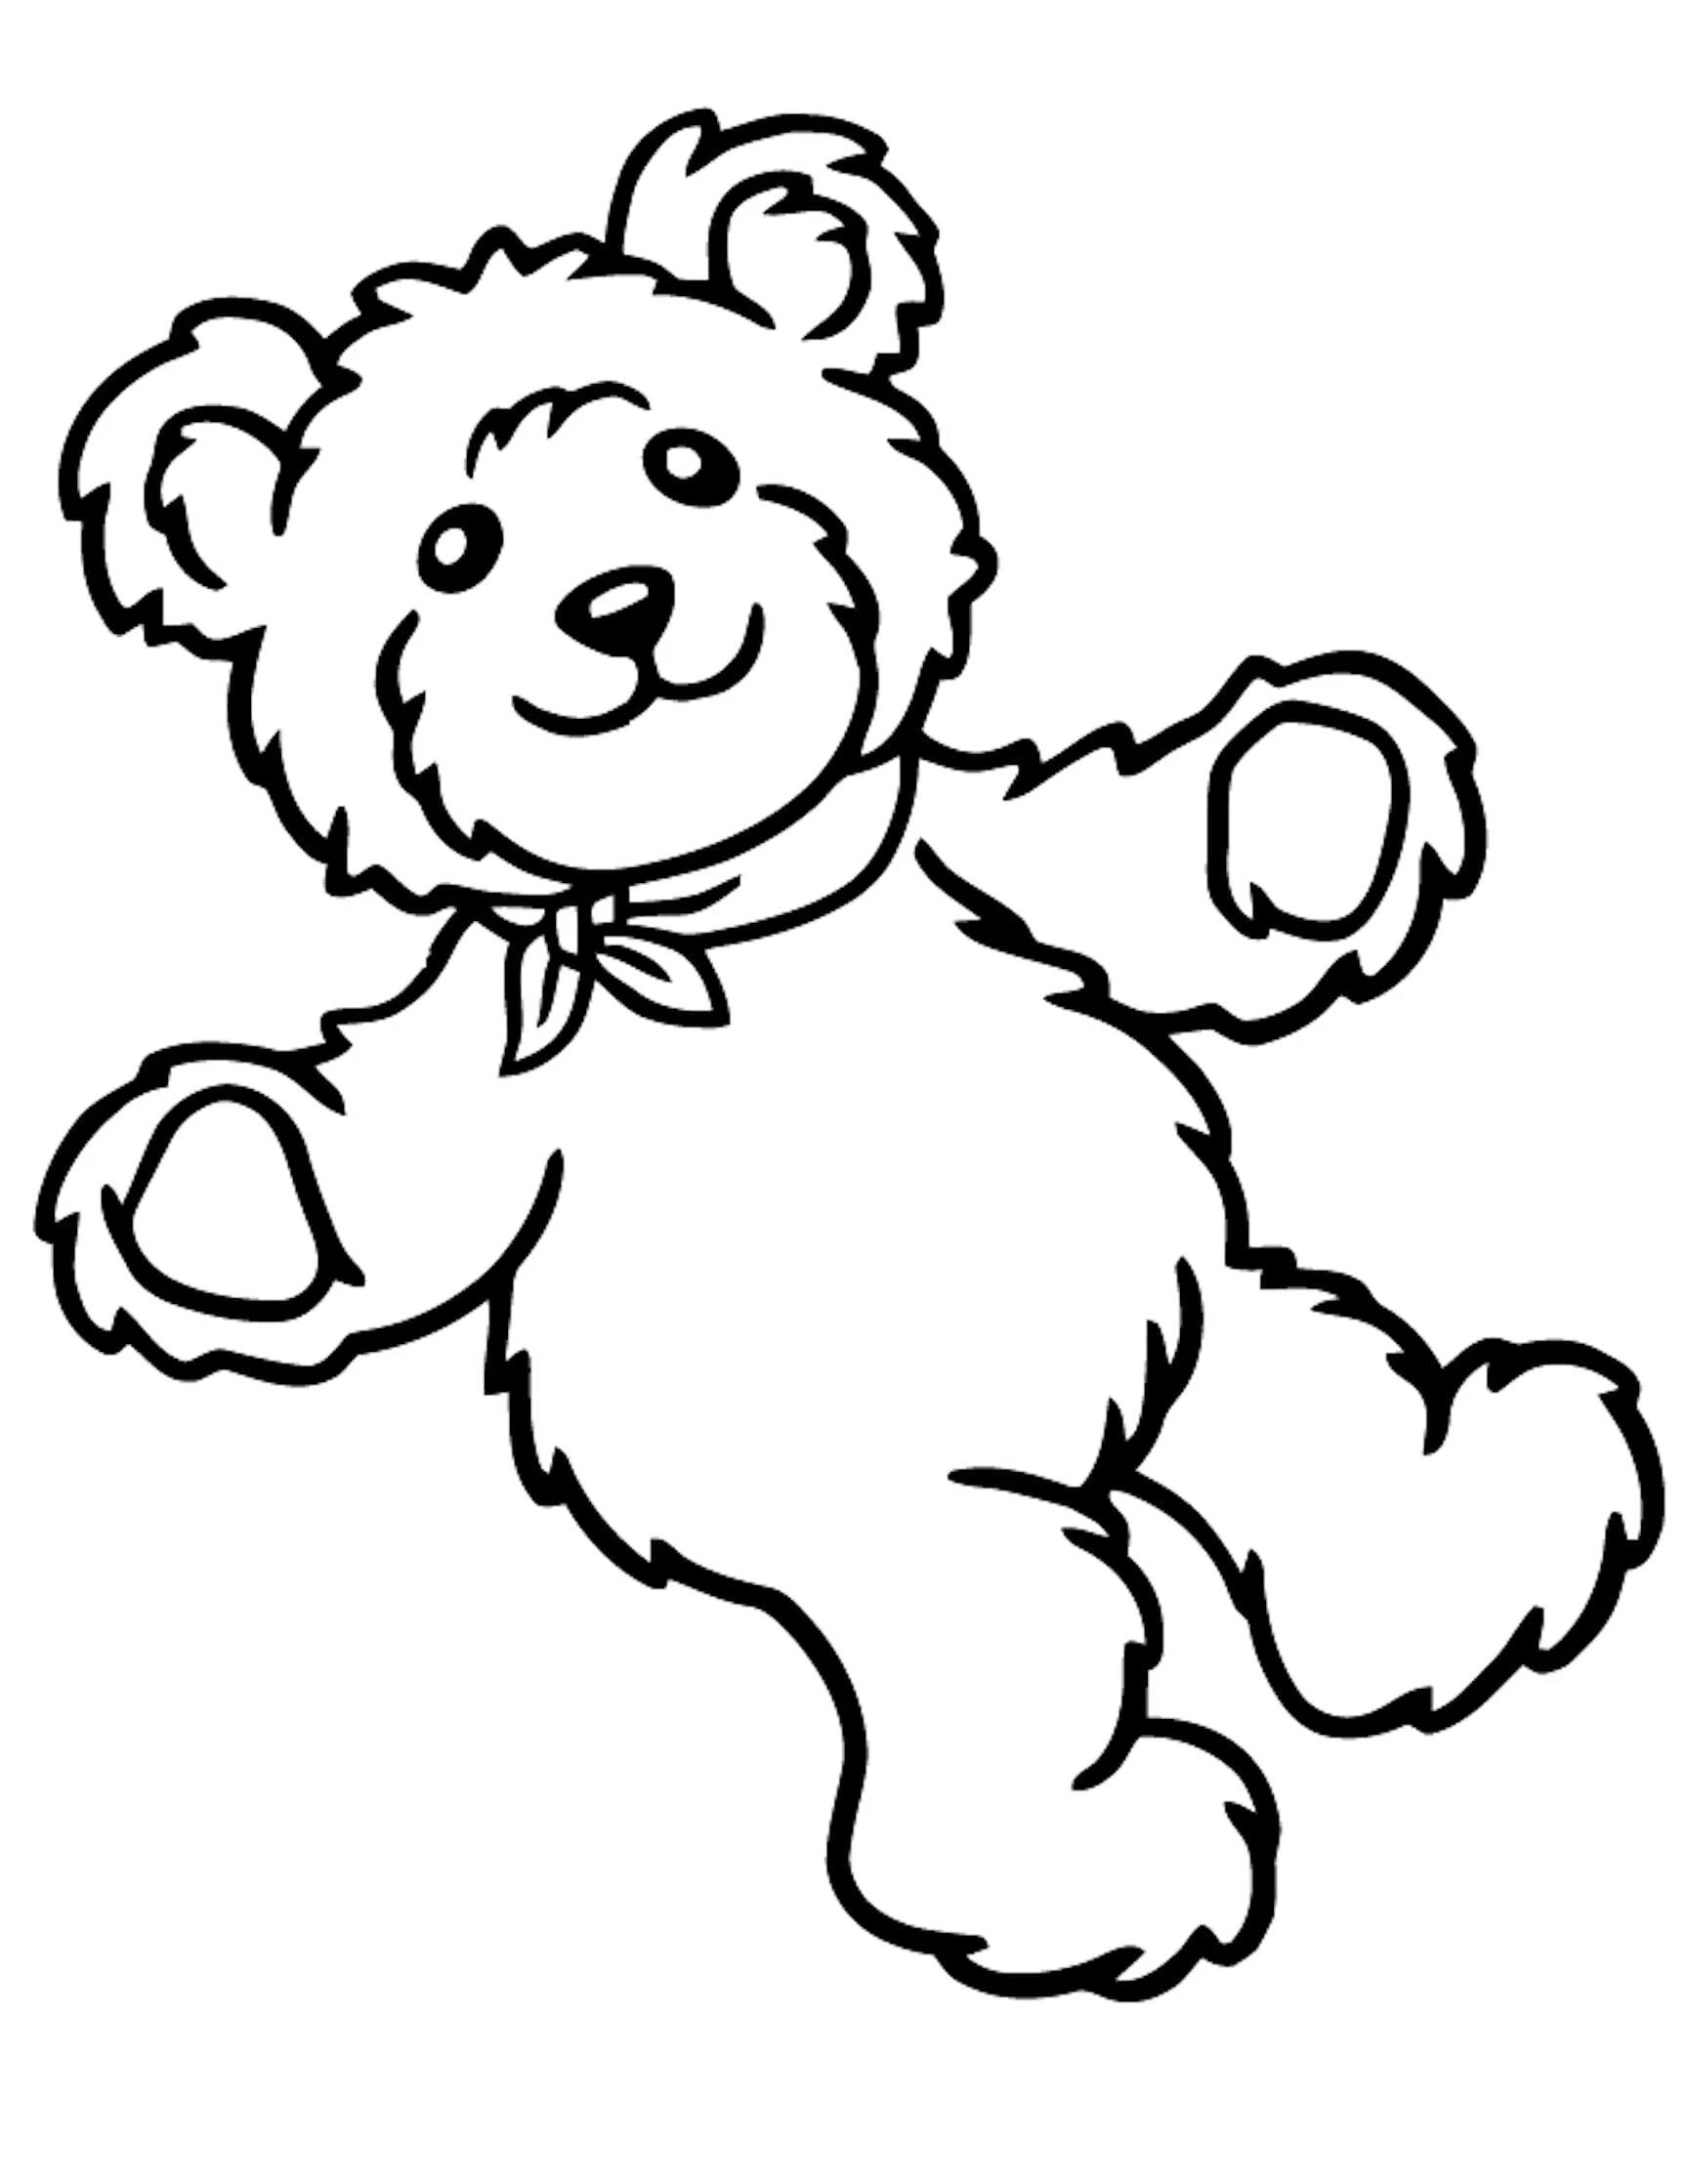 Teddy bear #5